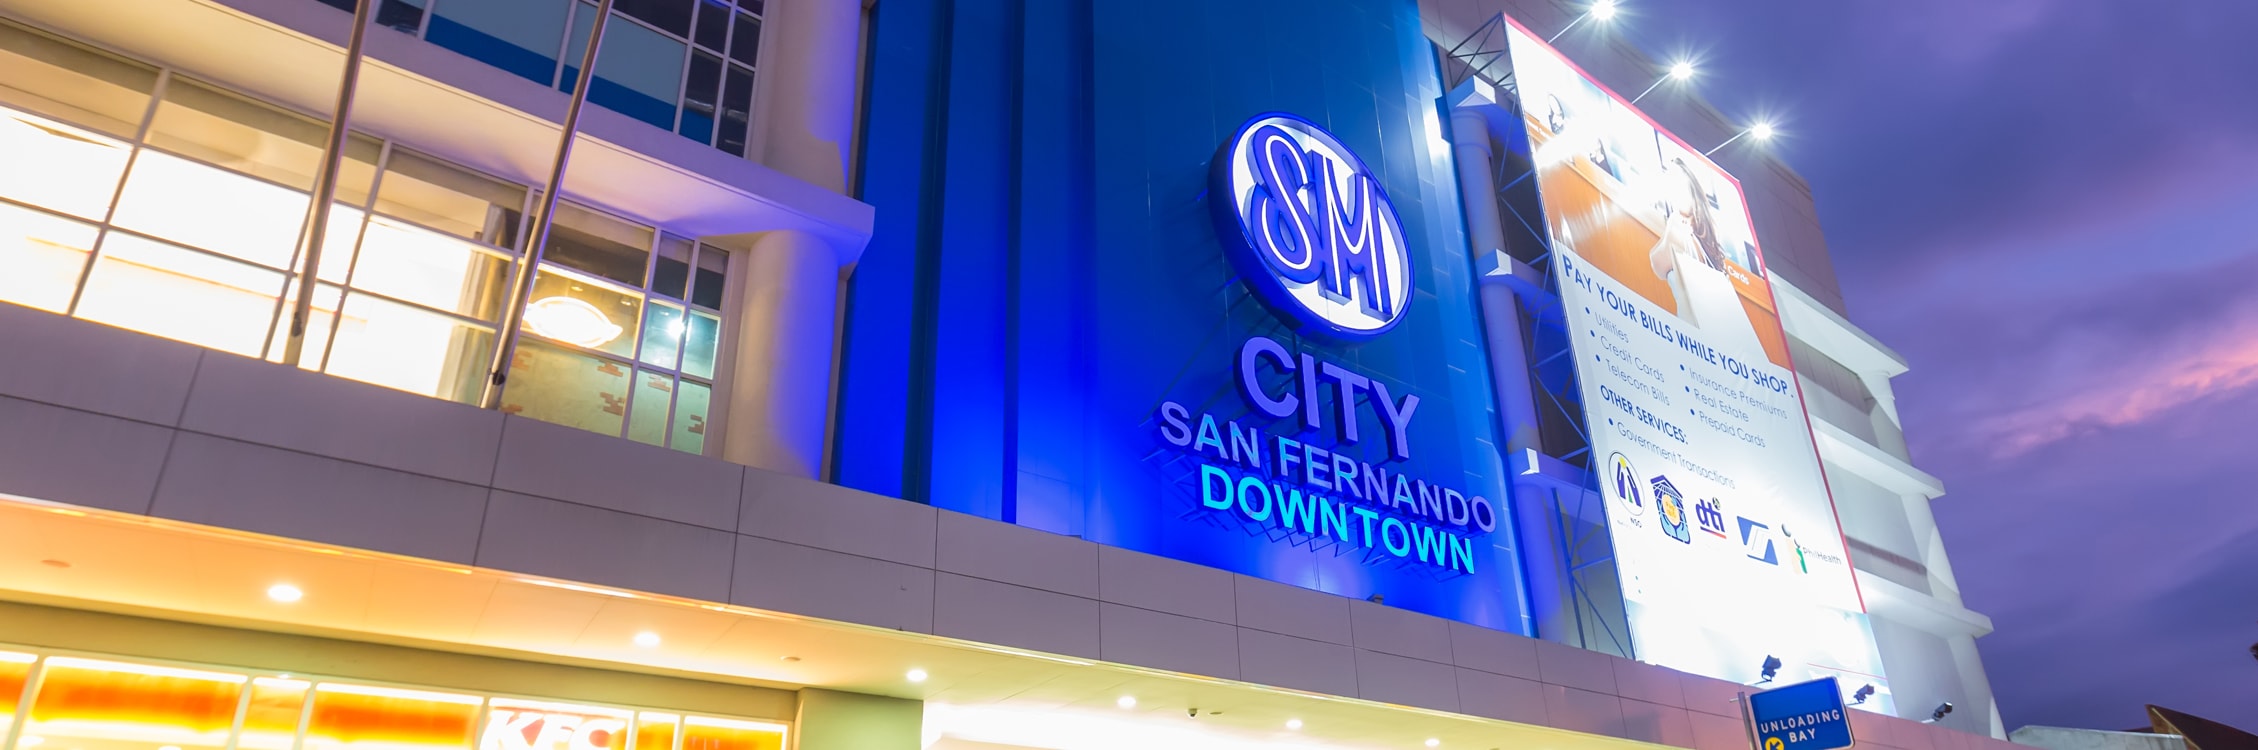 SM City San Fernando Downtown